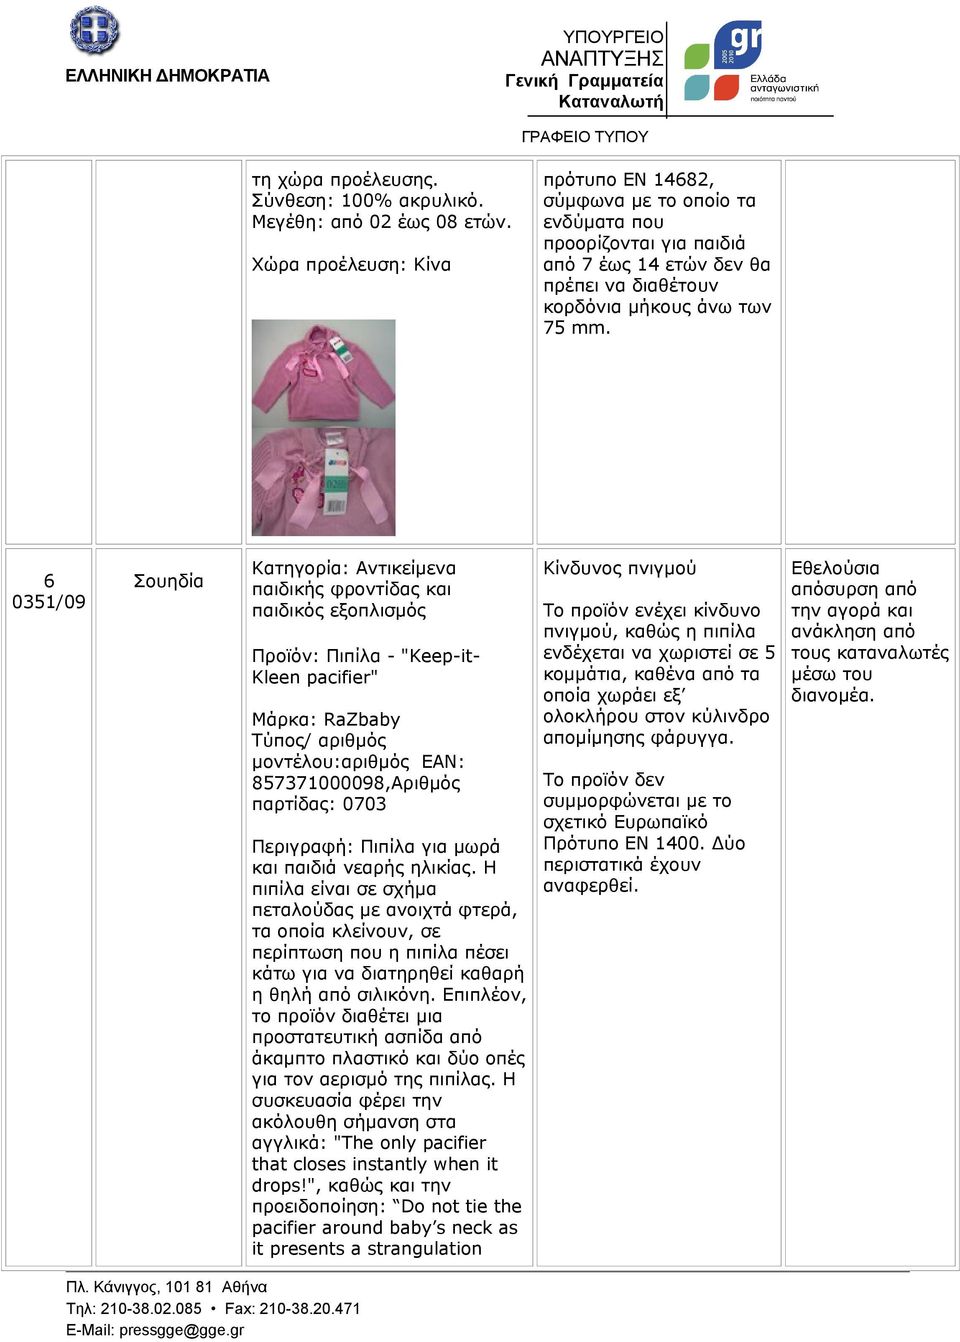 6 0351/09 Σουηδία Κατηγορία: Αντικείμενα παιδικής φροντίδας και παιδικός εξοπλισμός Προϊόν: Πιπίλα - "Keep-it- Kleen pacifier" Μάρκα: RaZbaby Τύπος/ αριθμός μοντέλου:αριθμός EAN: 857371000098,Αριθμός